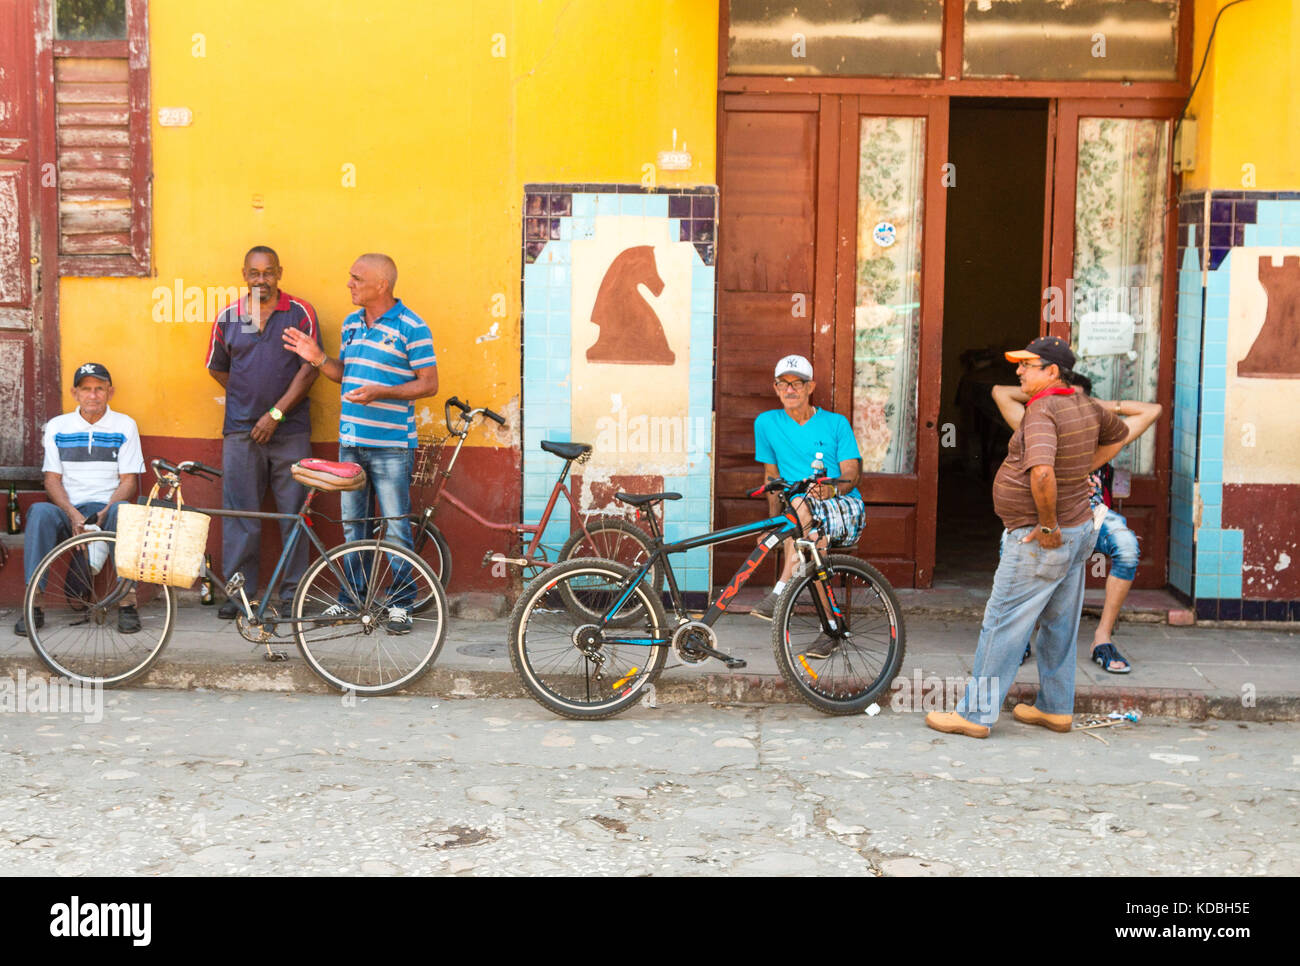 L'architecture coloniale espagnole aux maisons colorées, des rues pavées et des personnes dans une scène de rue, Trinidad, Sancti Spíritus, Cuba, Caraïbes Banque D'Images